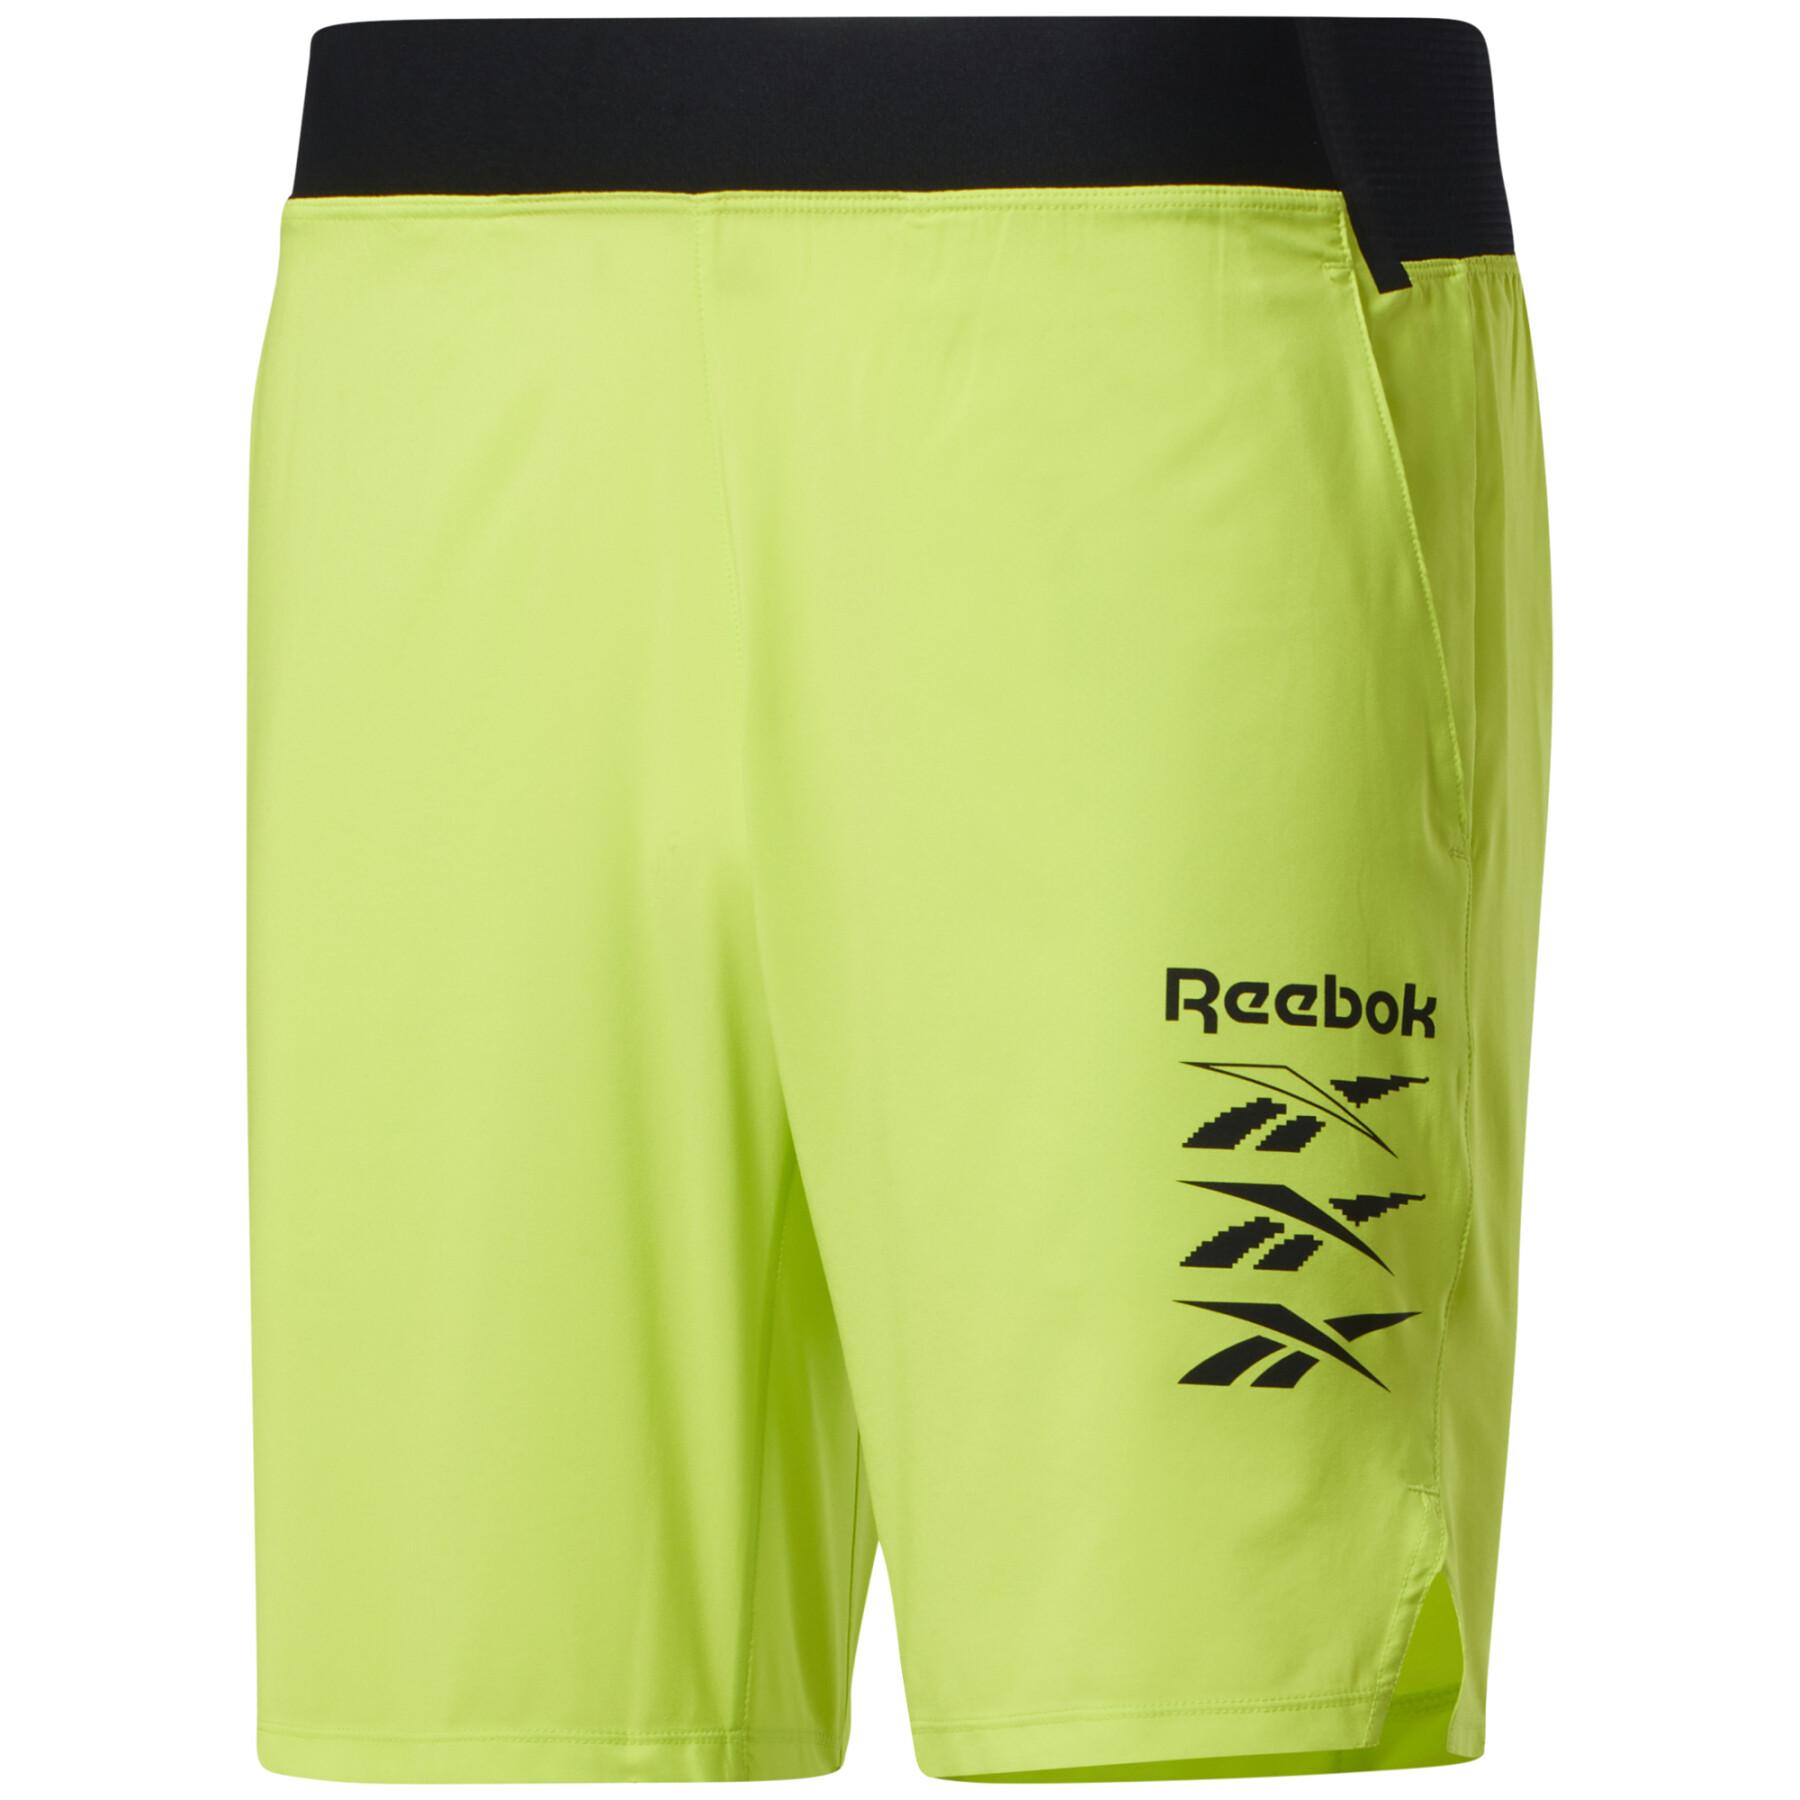 Спортивные шорты мужские Reebok GS6582 желтые XS